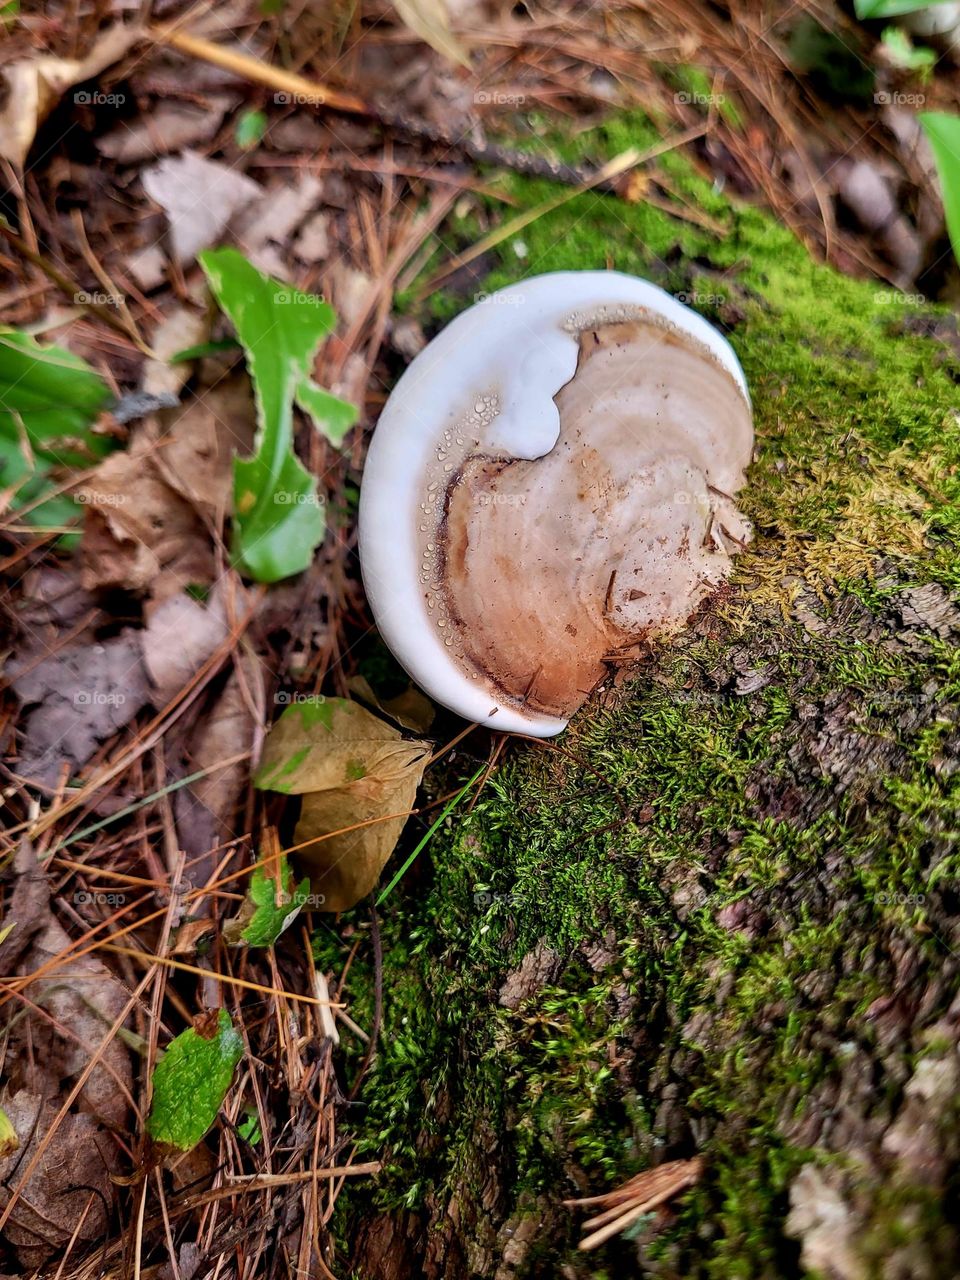 Magical Mushroom While Hiking